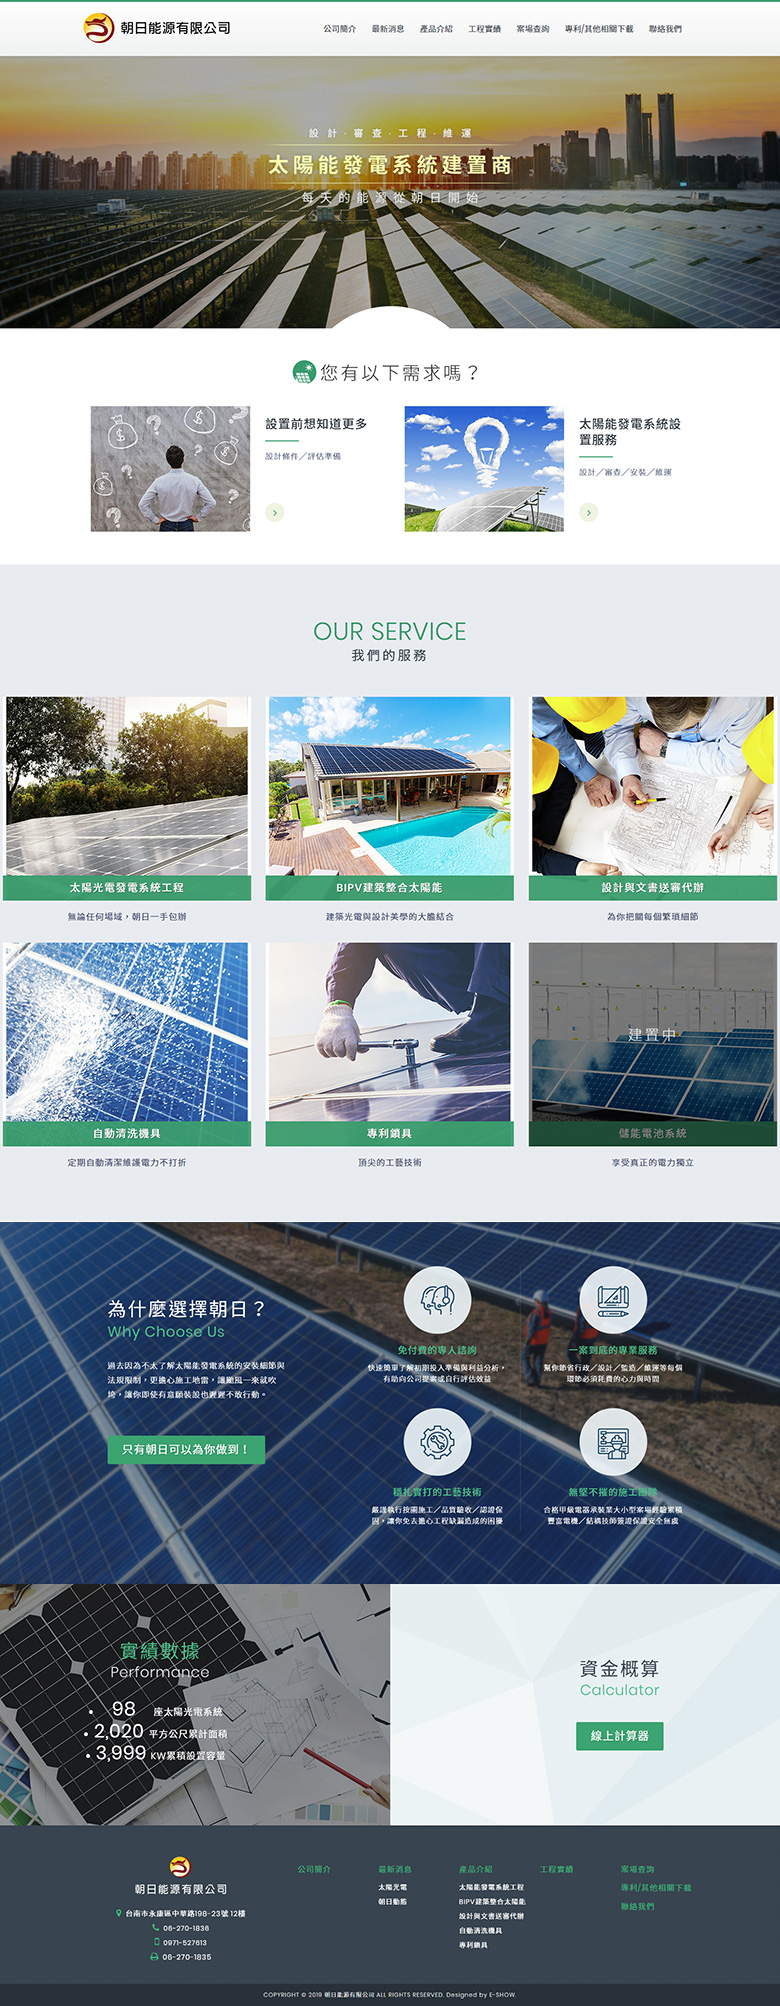 高雄網頁設計公司推薦 | 意匠客戶案例 | 朝日能源